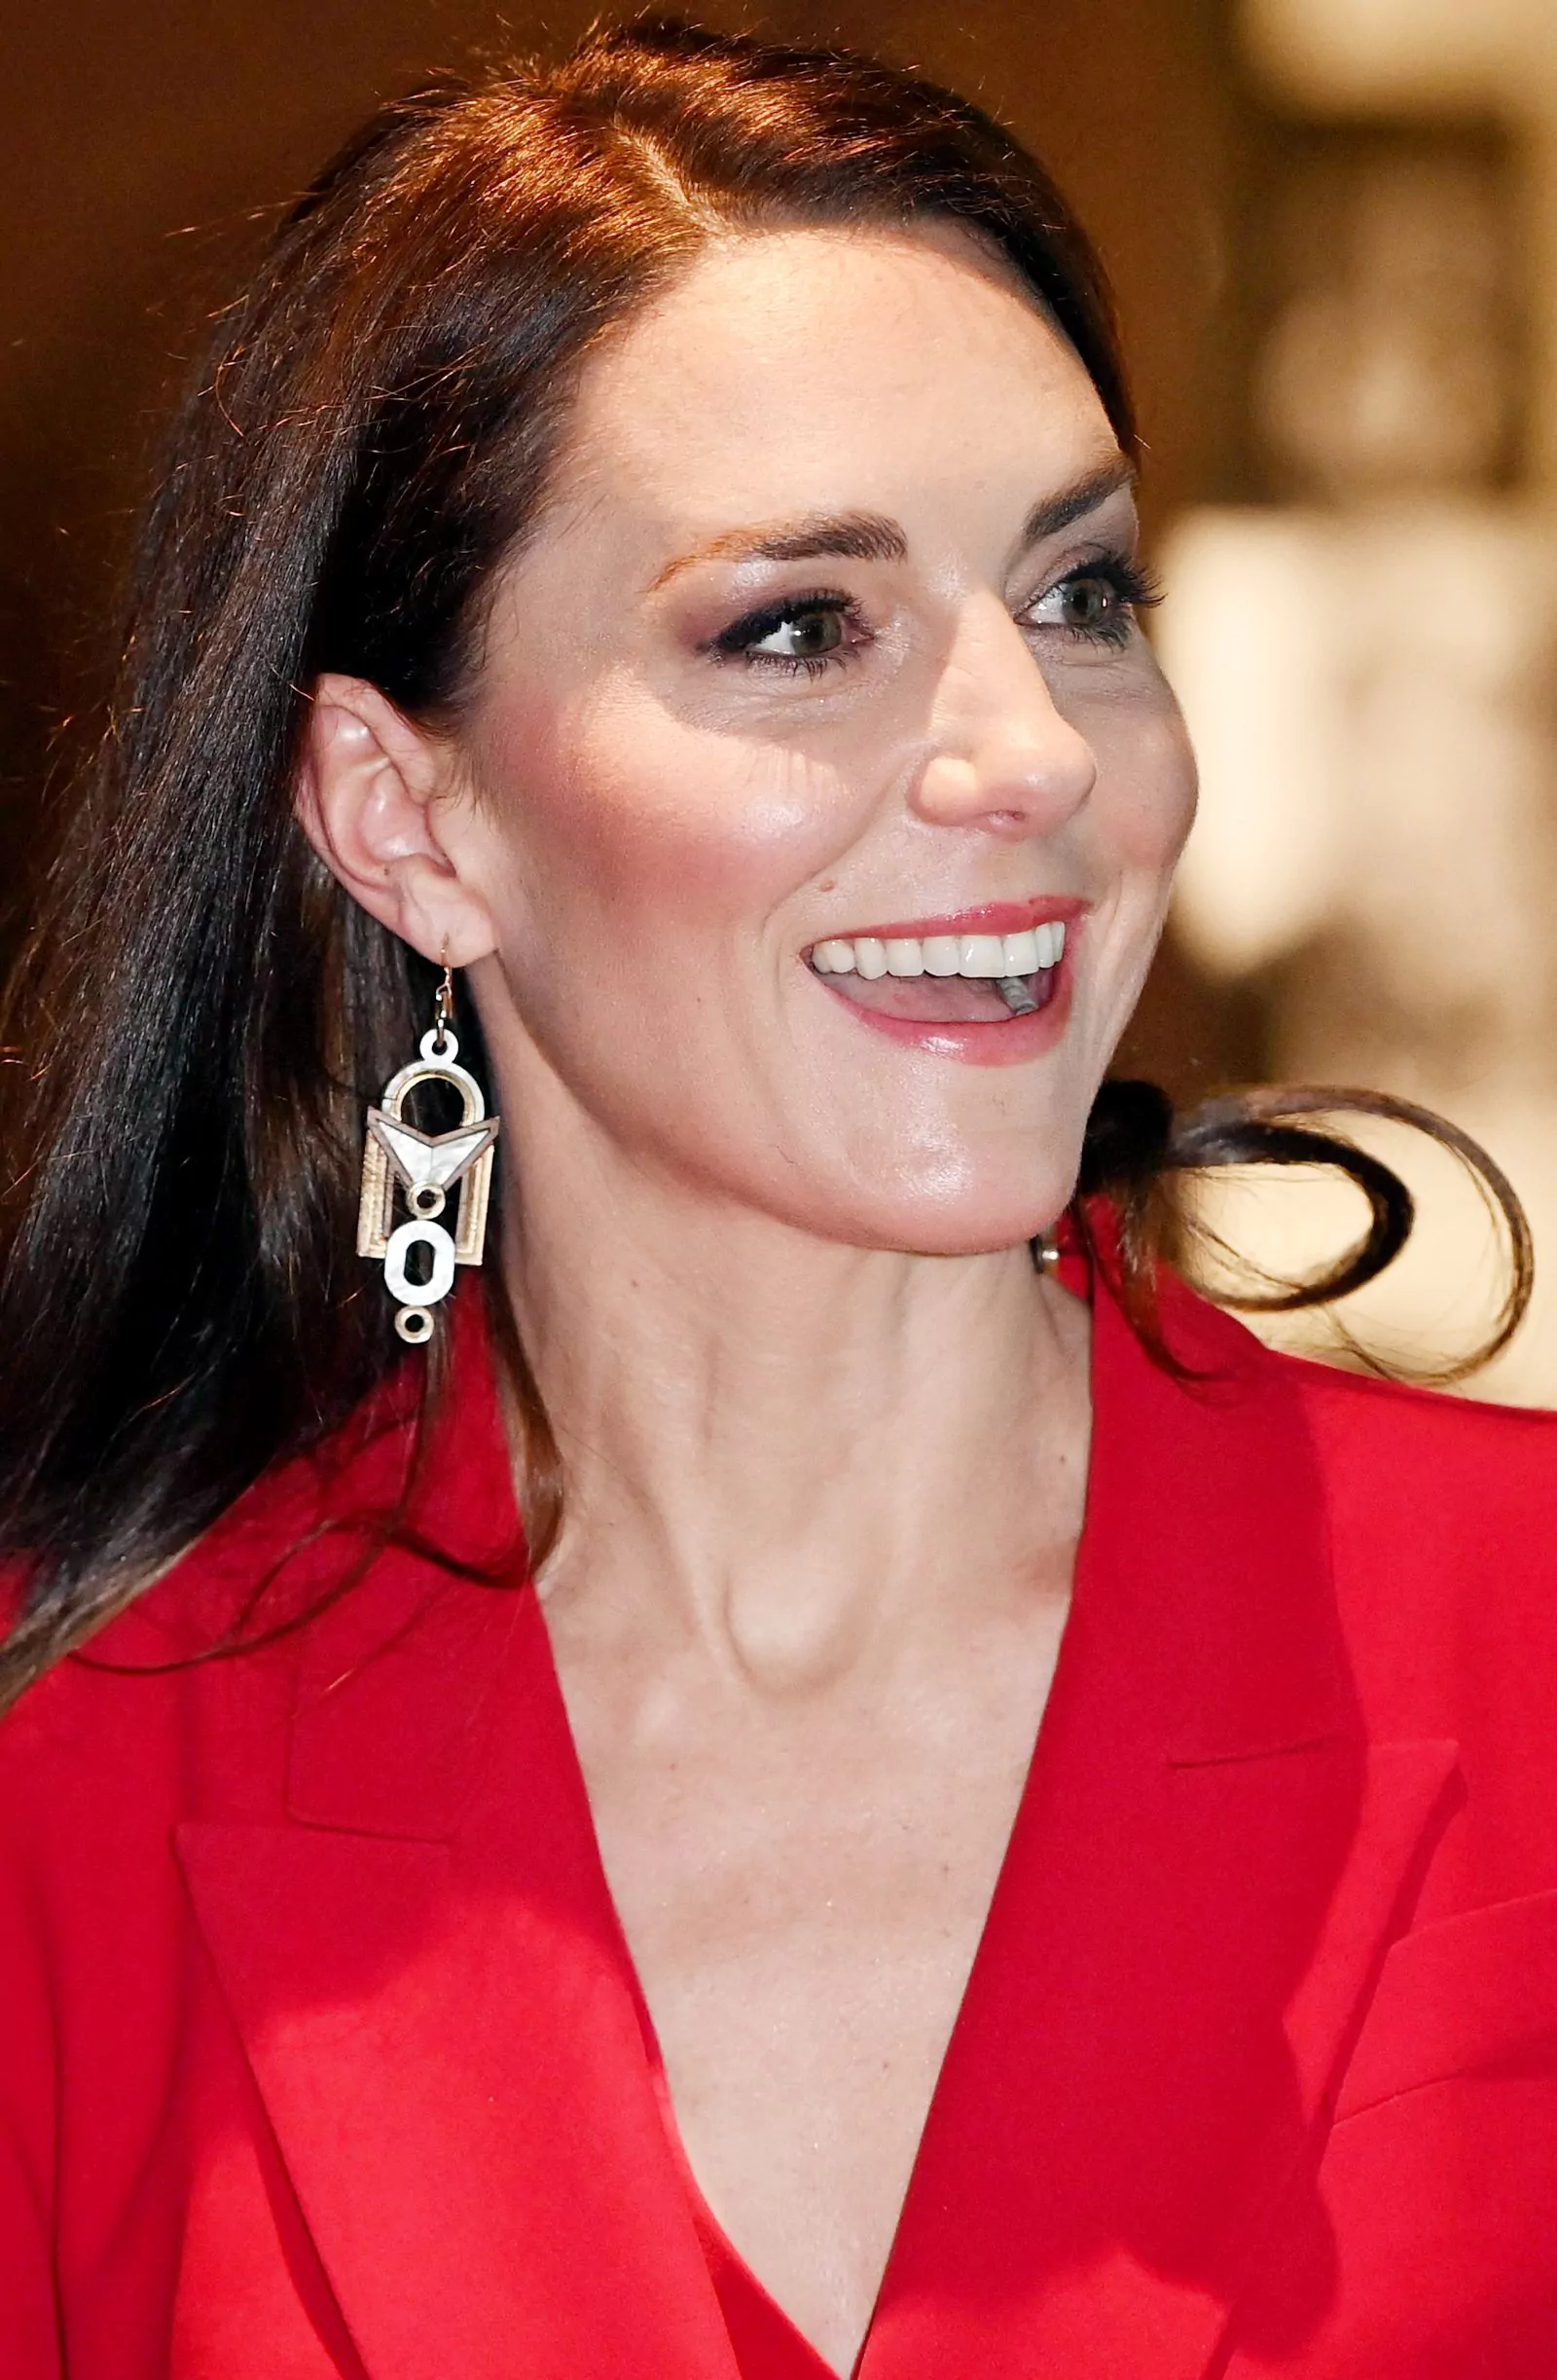 Кэтрин, принцесса Уэльская на мероприятии, организованном The Royal Foundation Centre for Early Childhood, в штаб-квартире BAFTA в Лондоне, 30 января 2023 г.